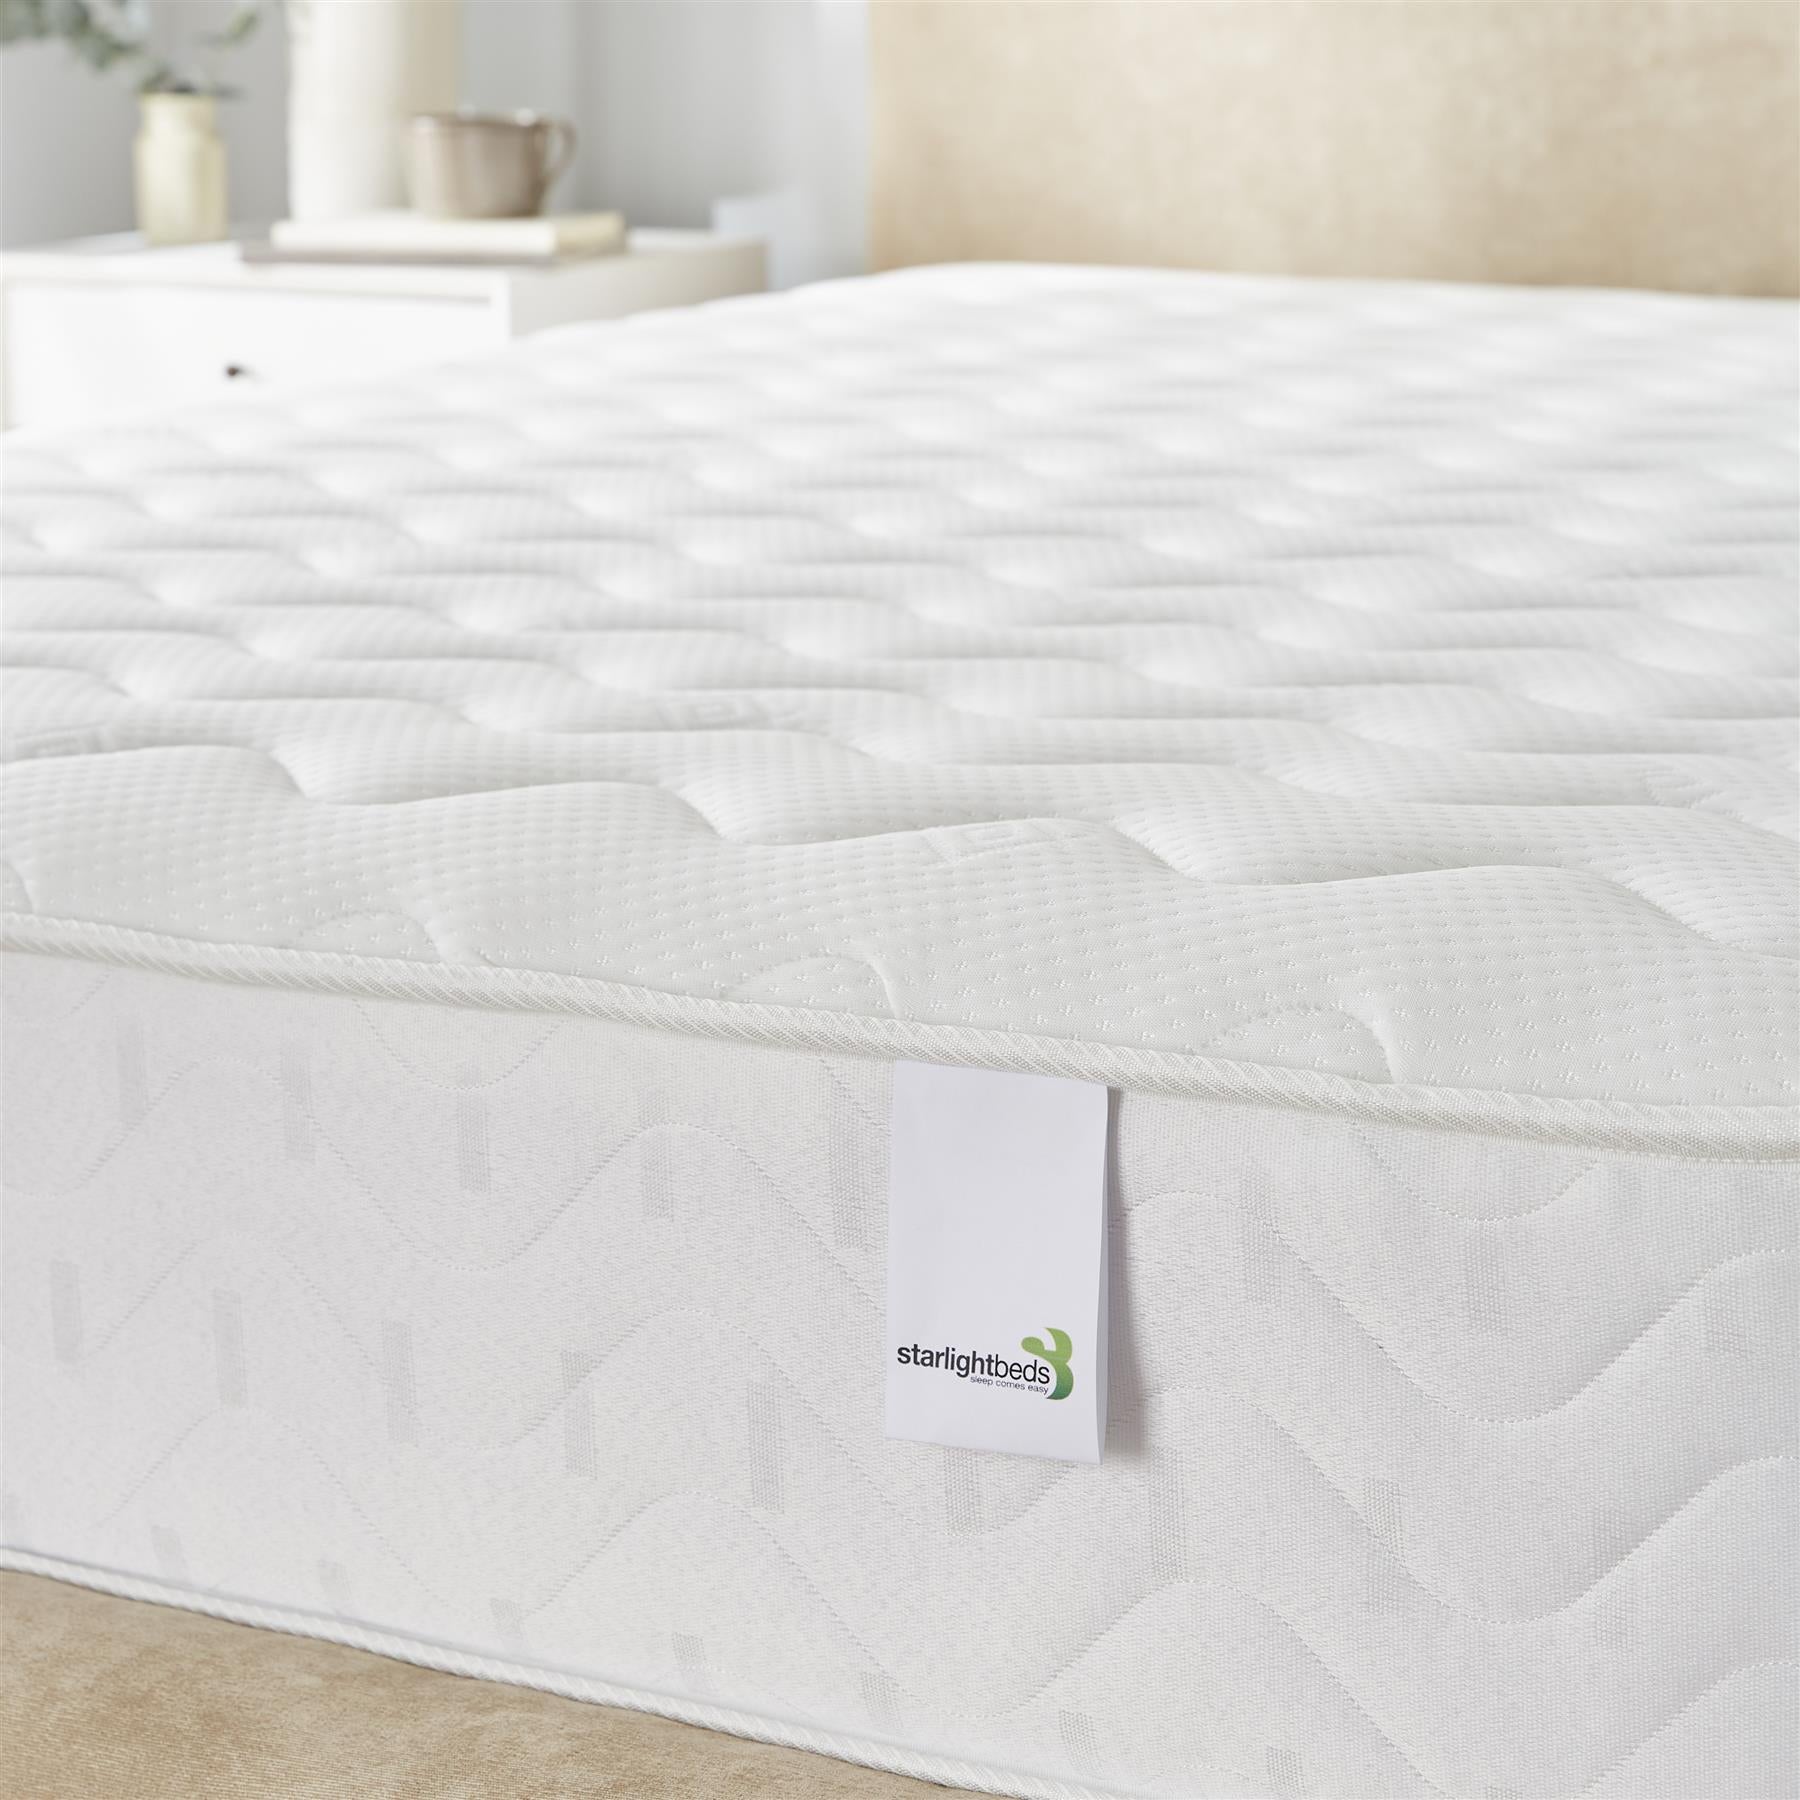 Starlight Beds™ - cheap mattress